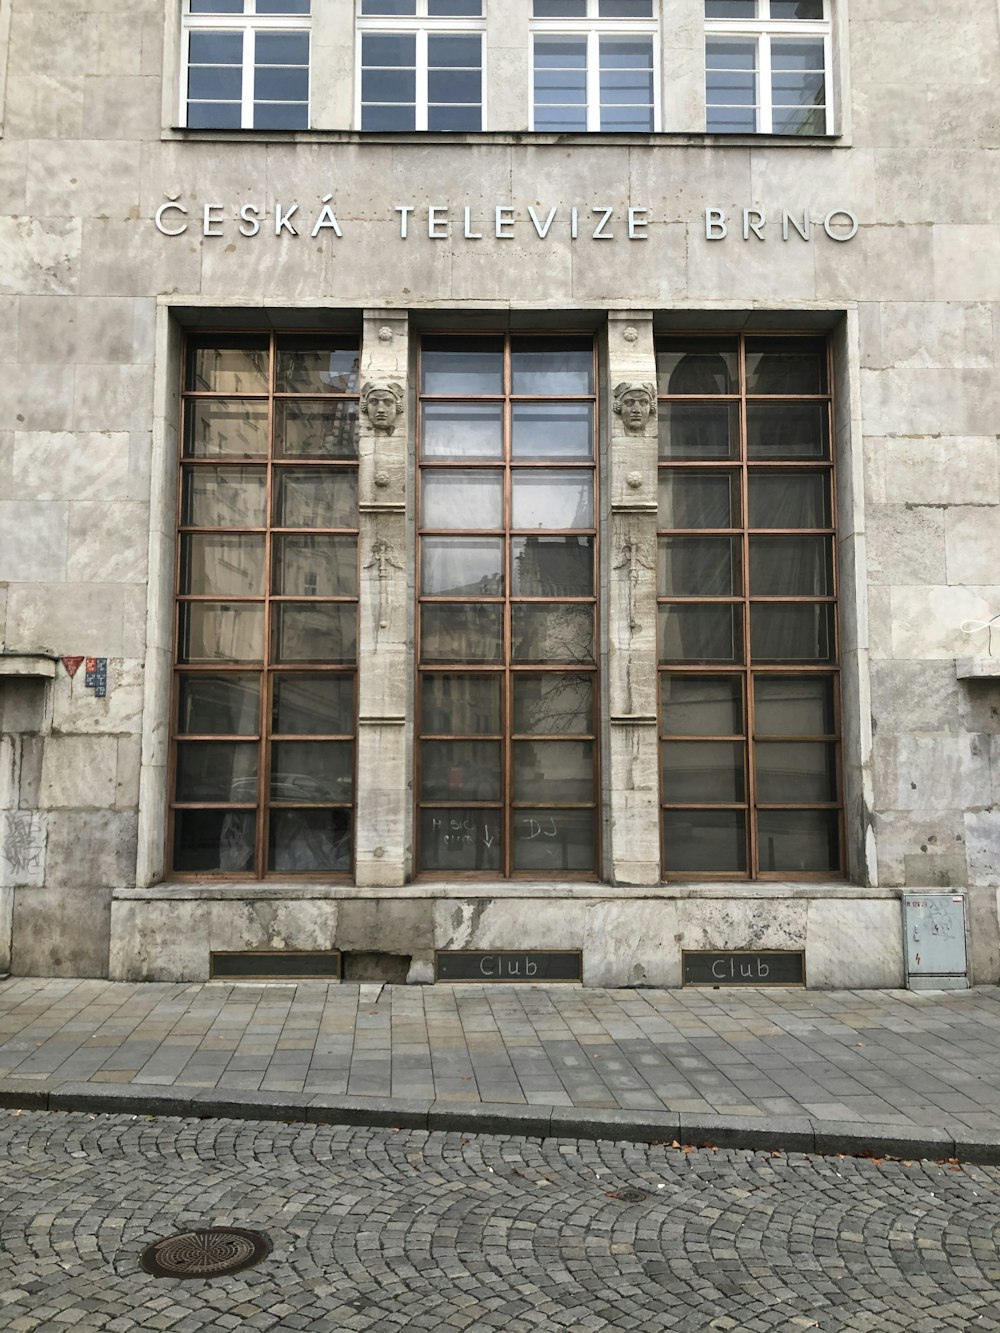 Ceska TElevize Brno building during daytime